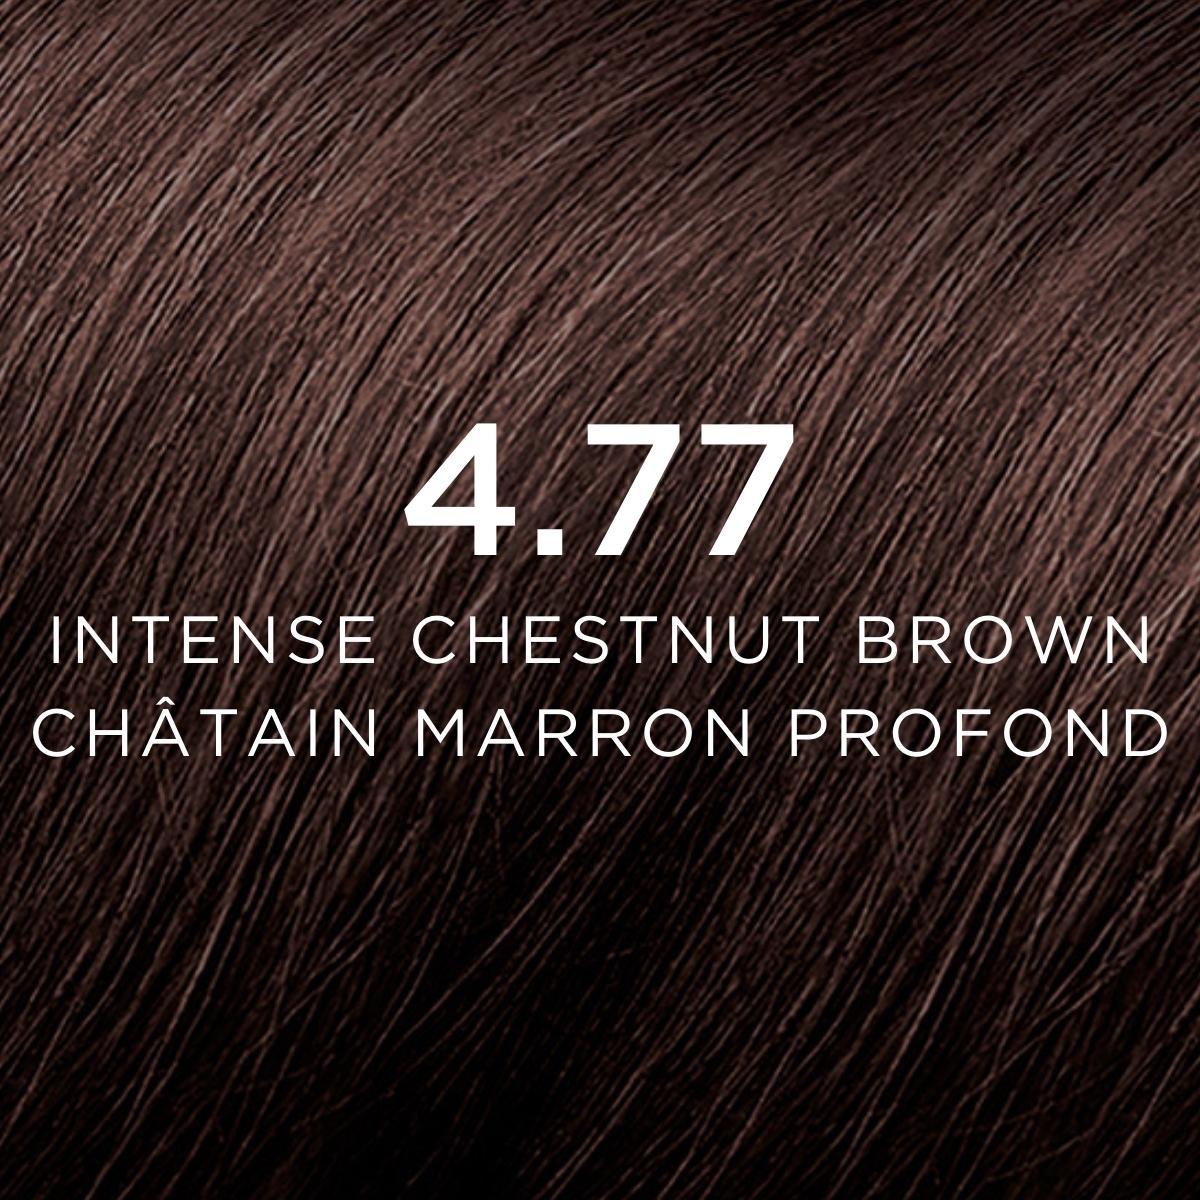 4.77 Intense Chestnut Brown